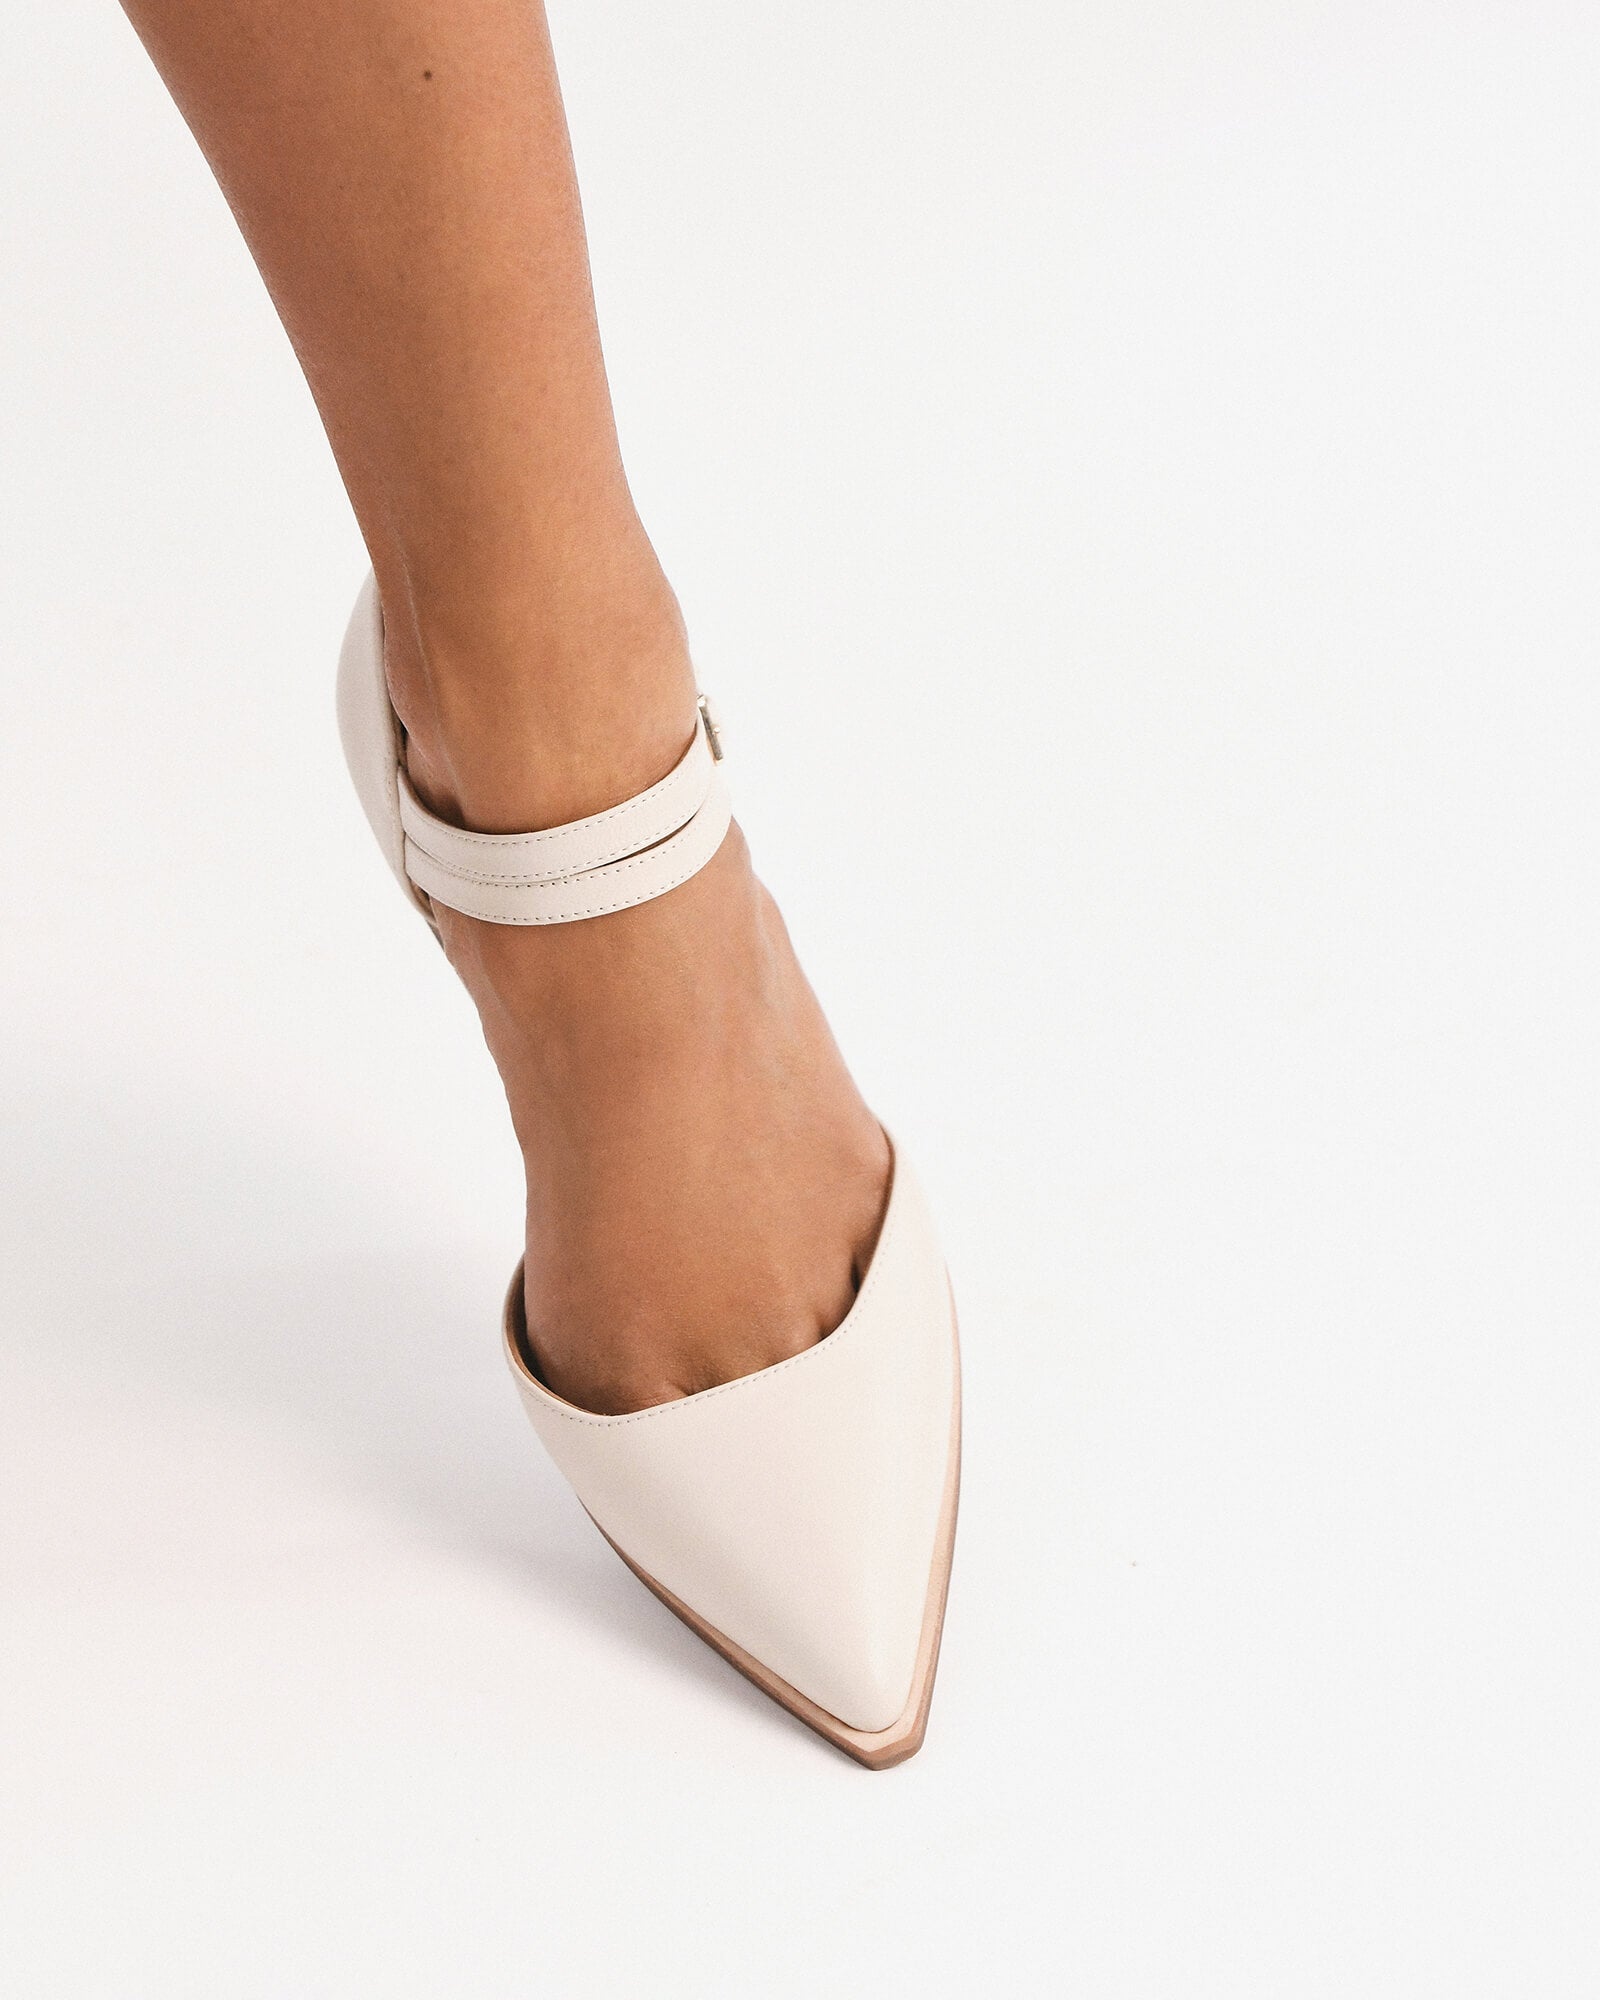 White Stiletto Heels - Ankle Strap Heels - Sheer Mesh Heels - Lulus